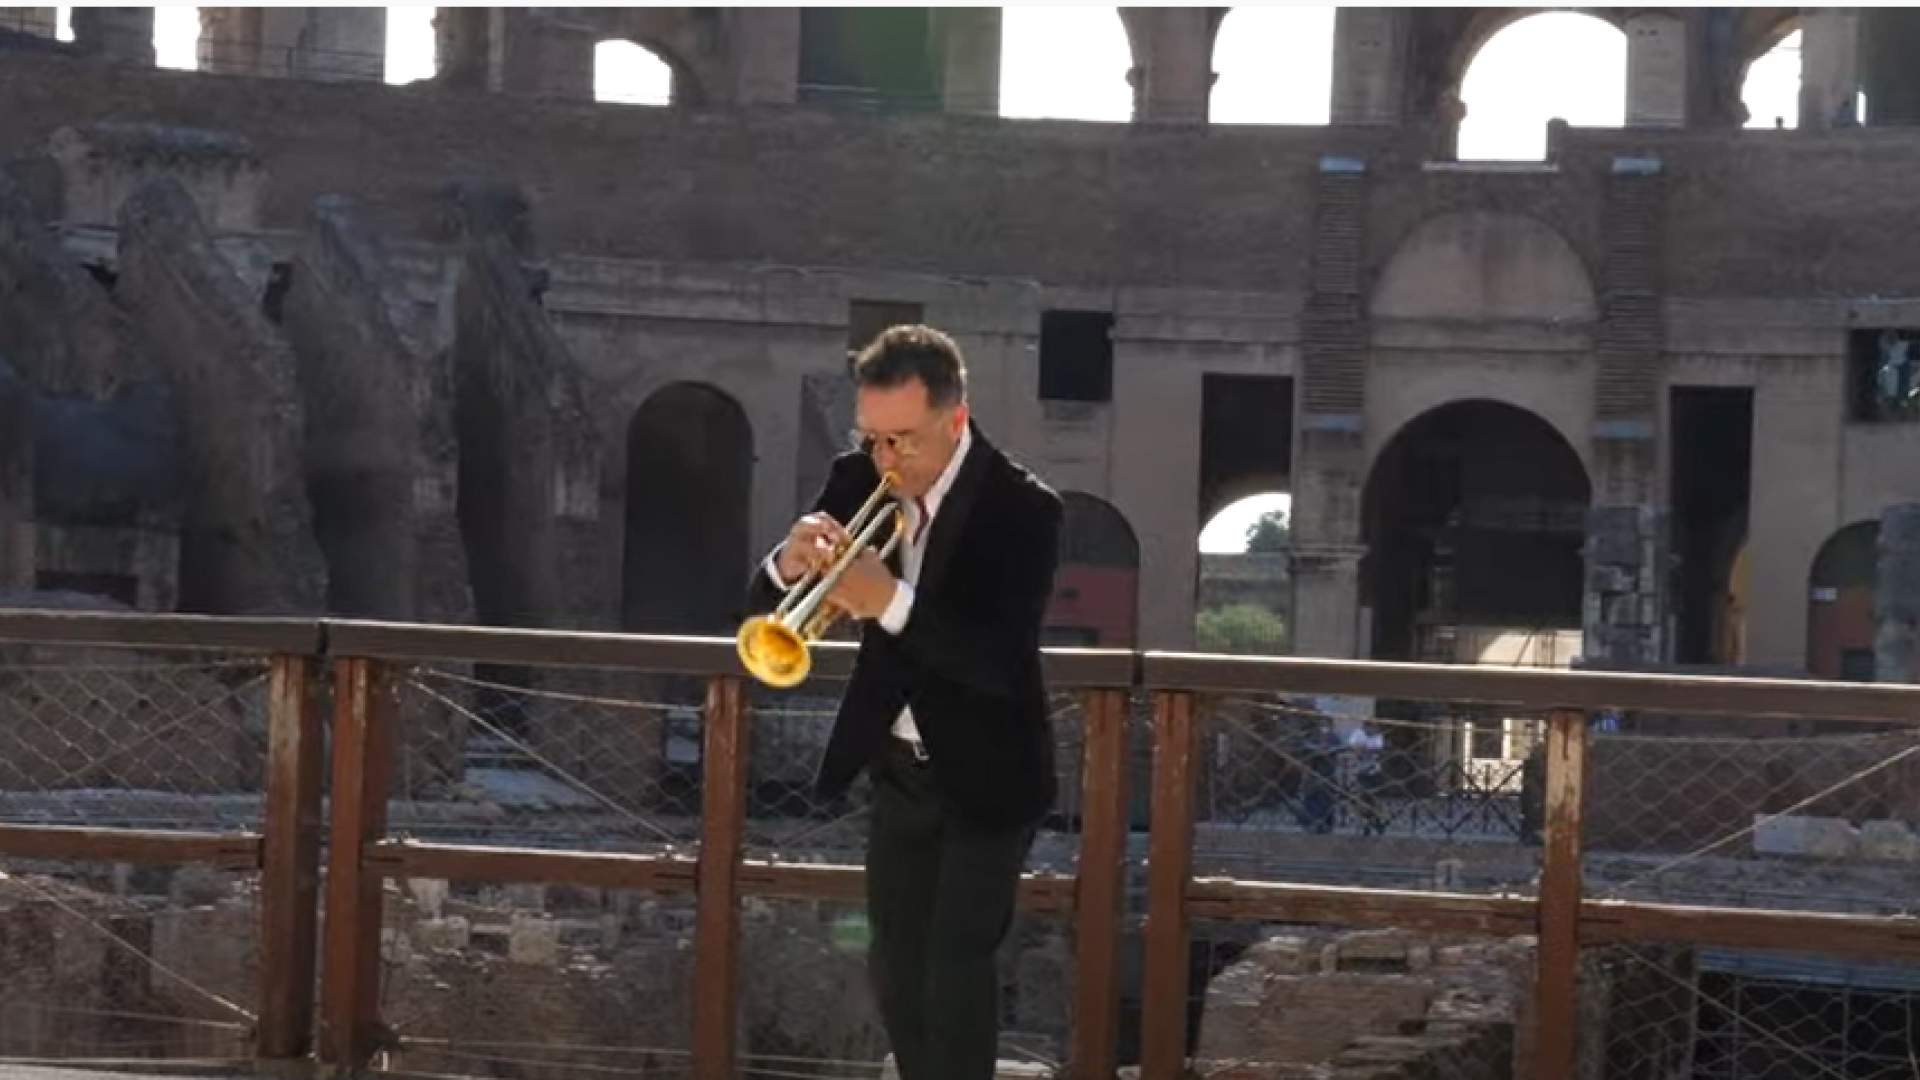 VIDEO ”Colosseo”, opera singurului artist român căruia autoritățile italiene i-au permis să filmeze în Colosseum